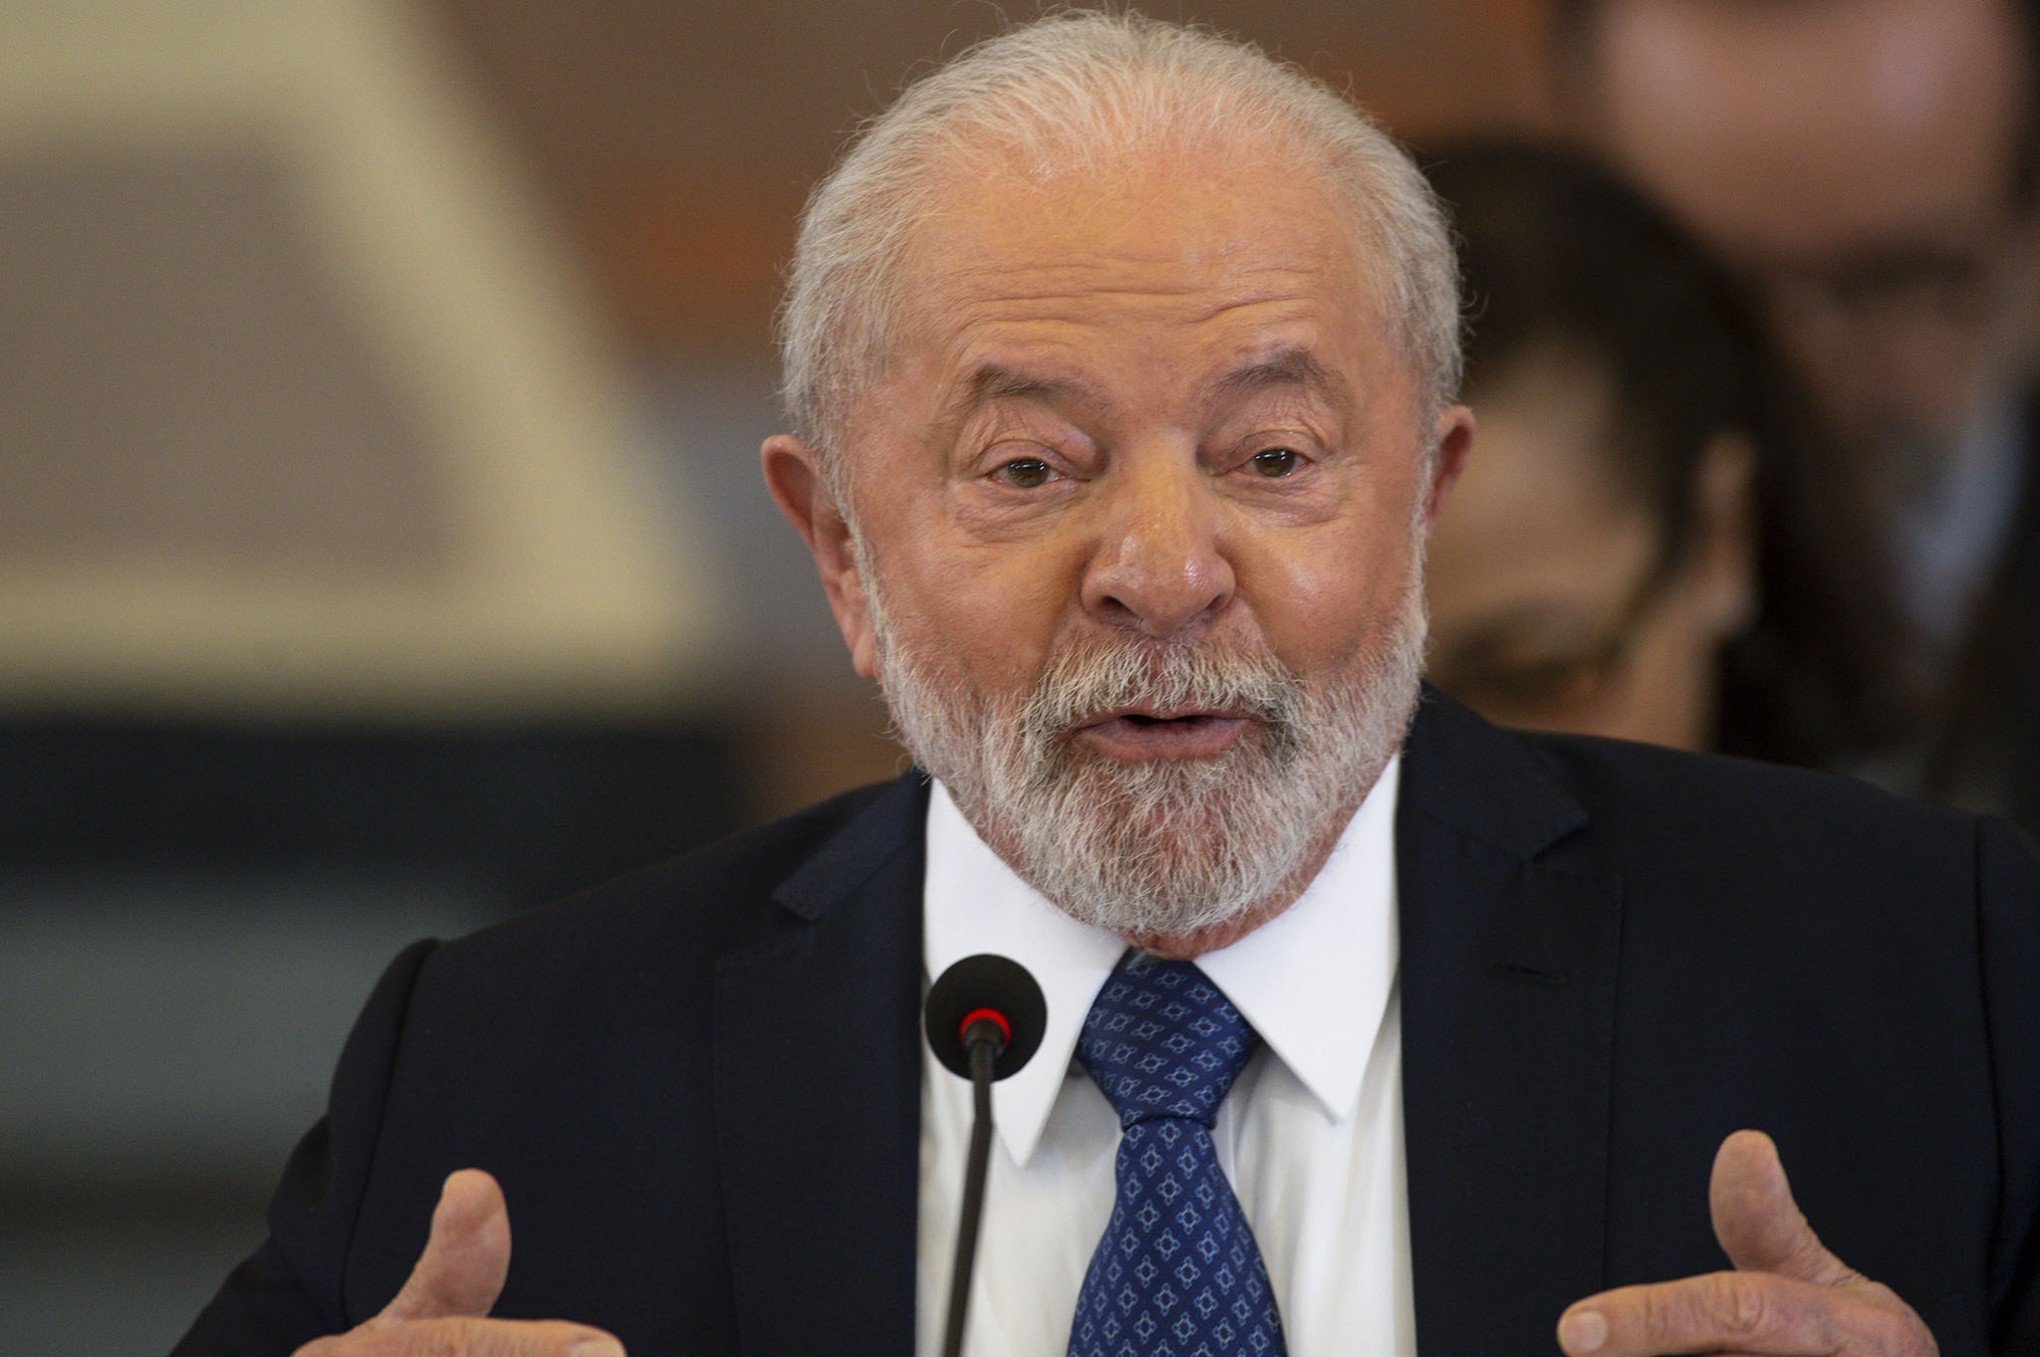 "Unidade de referência": Lula volta a defender criação de moeda única para facilitar comércio entre países